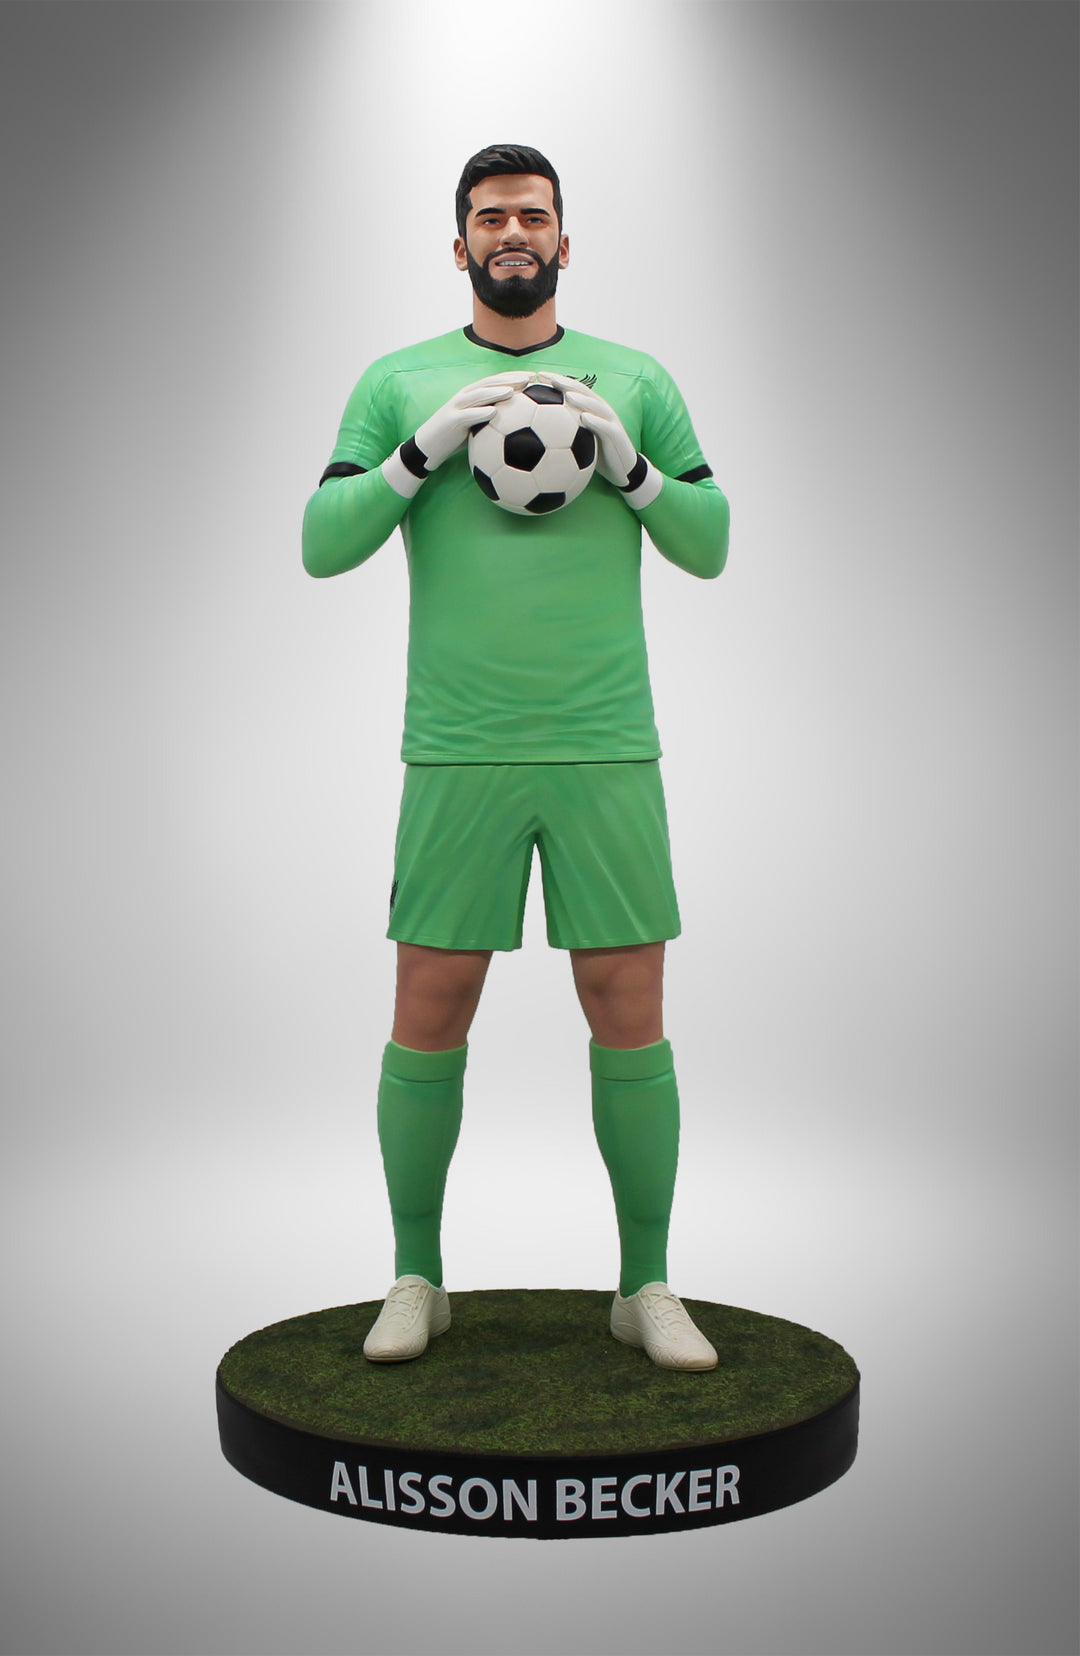 Brazilian National Team – The Official SoccerStarz Shop